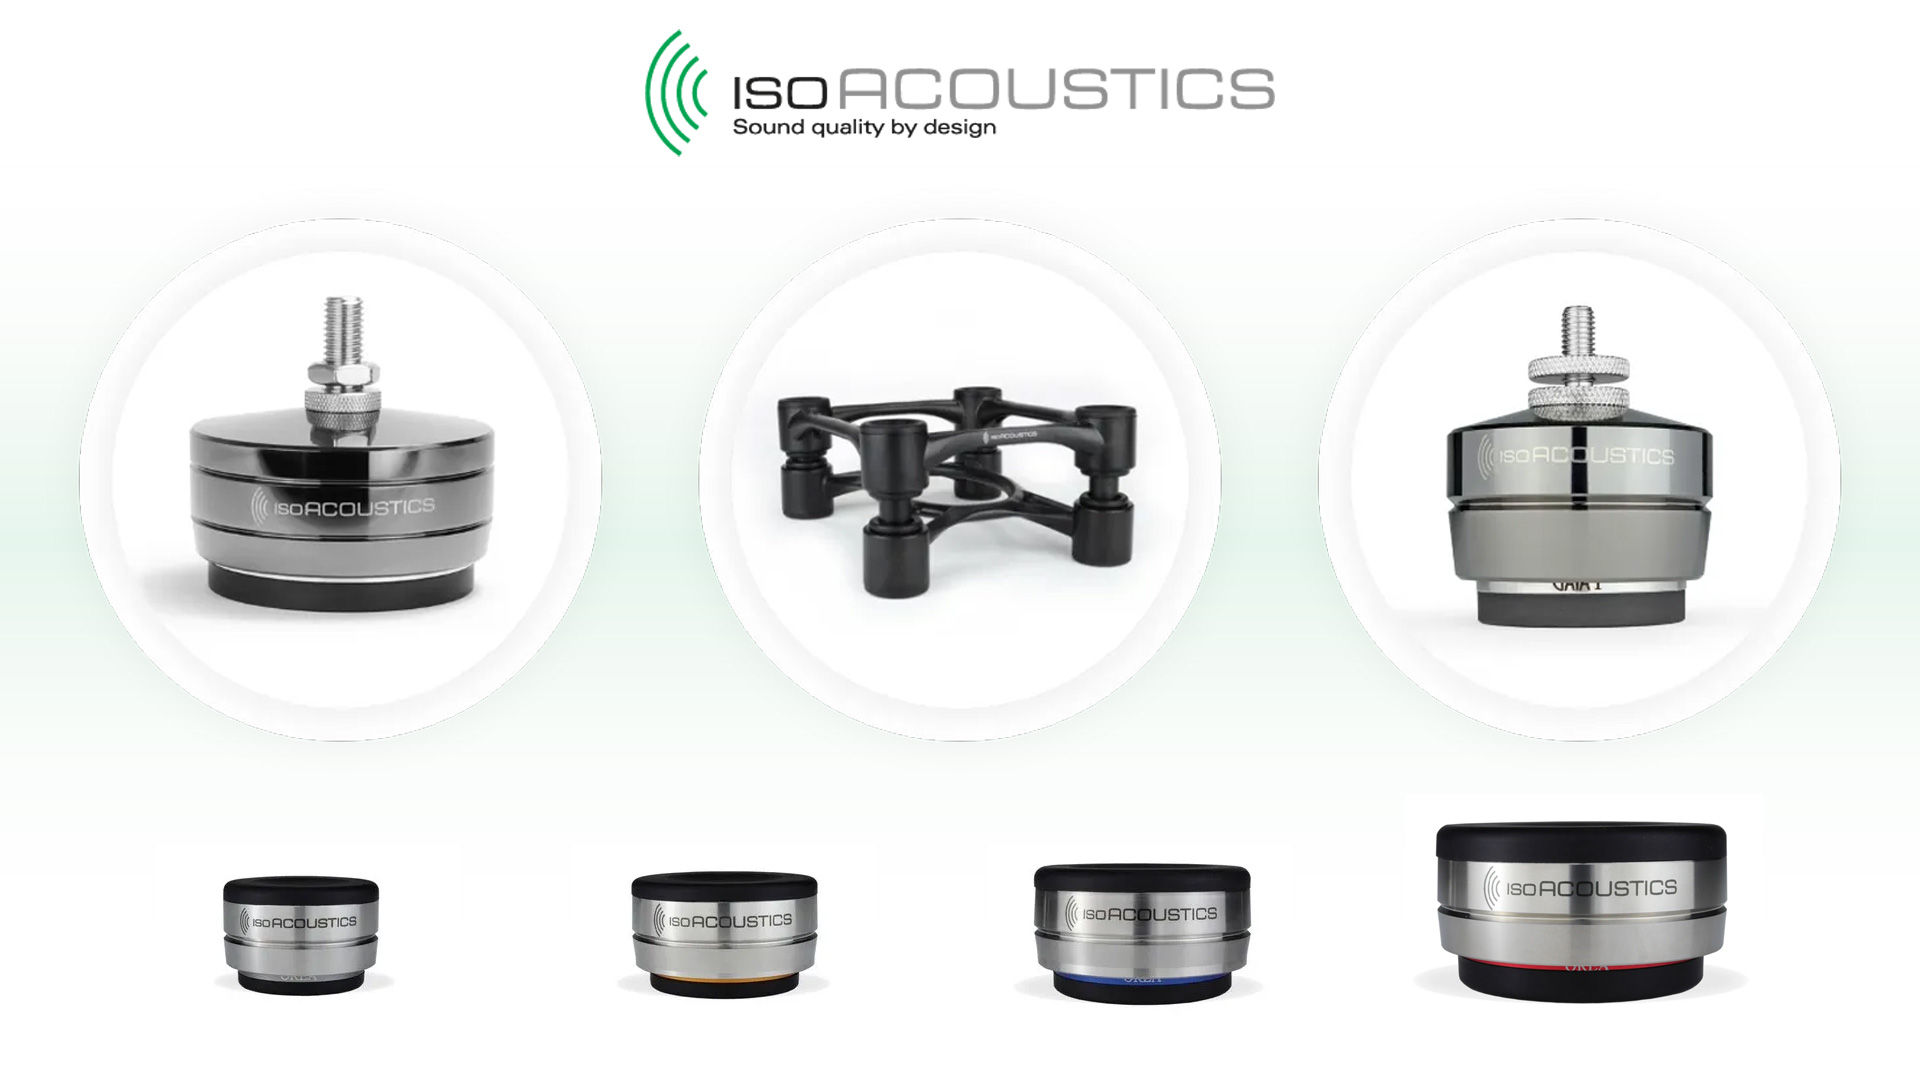 IsoAcoustics Noise Isolation Products | Unilet Sound & Vision